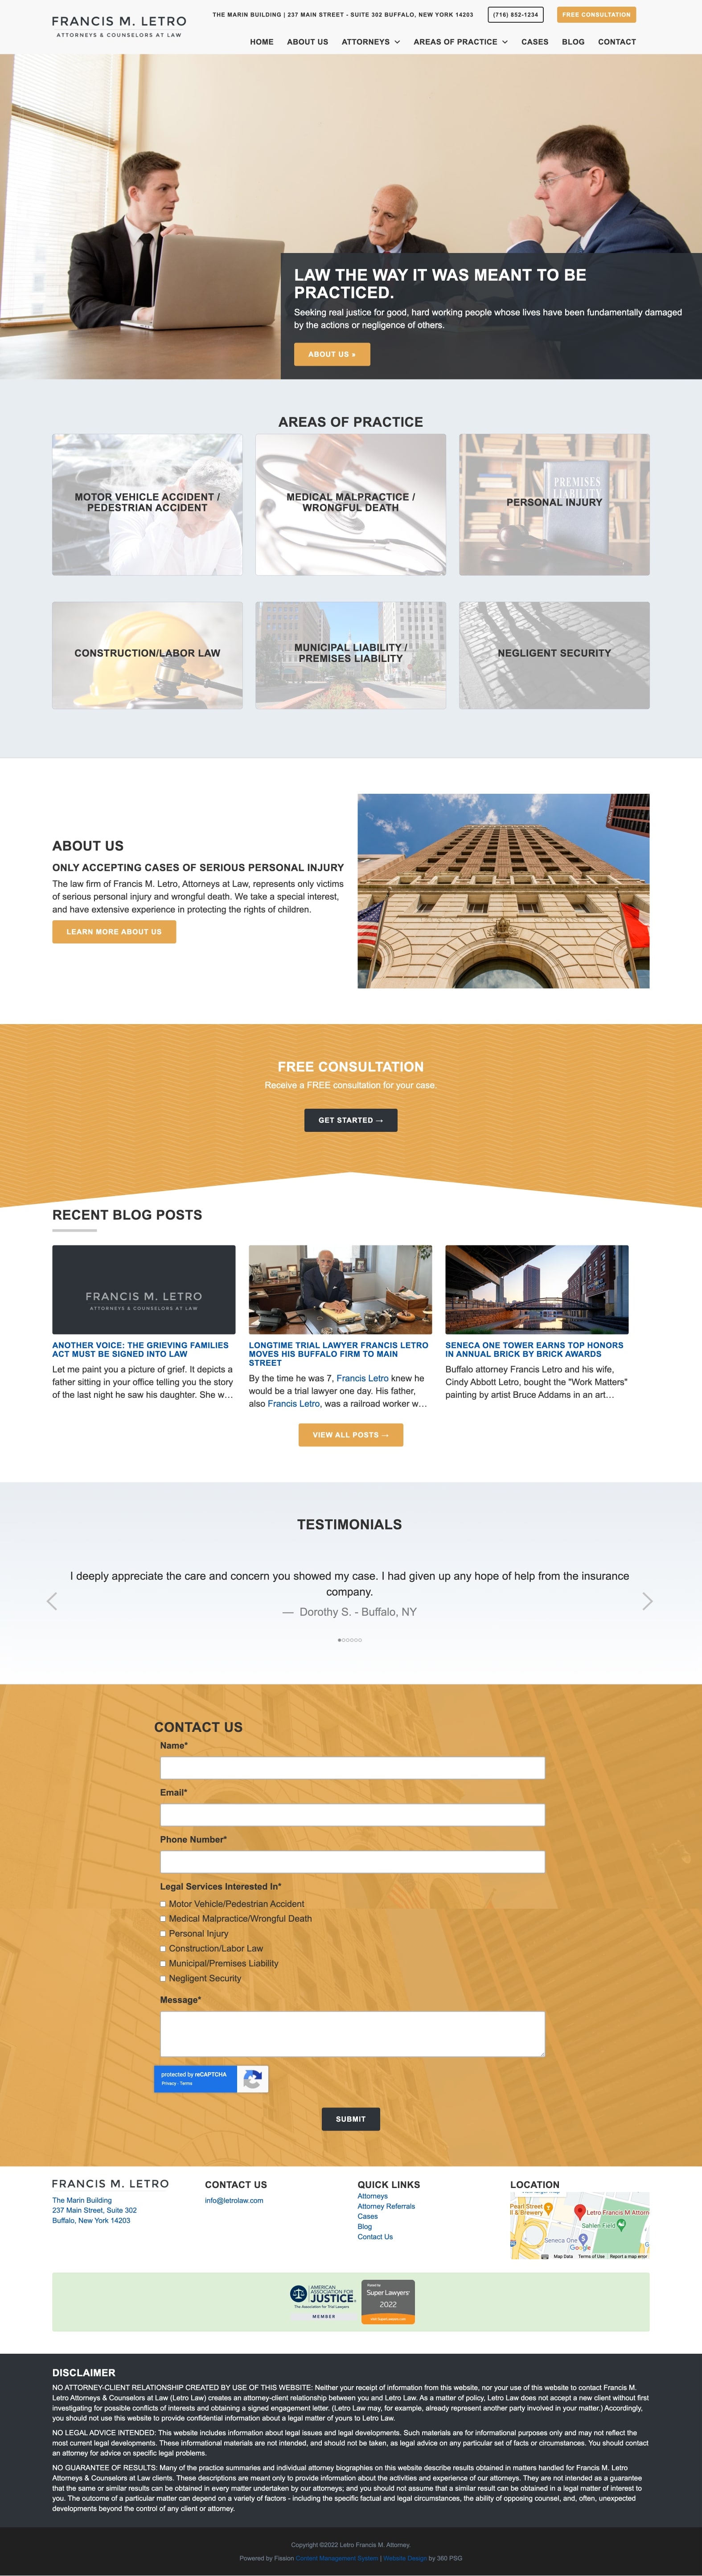 Letro Law Website - Desktop